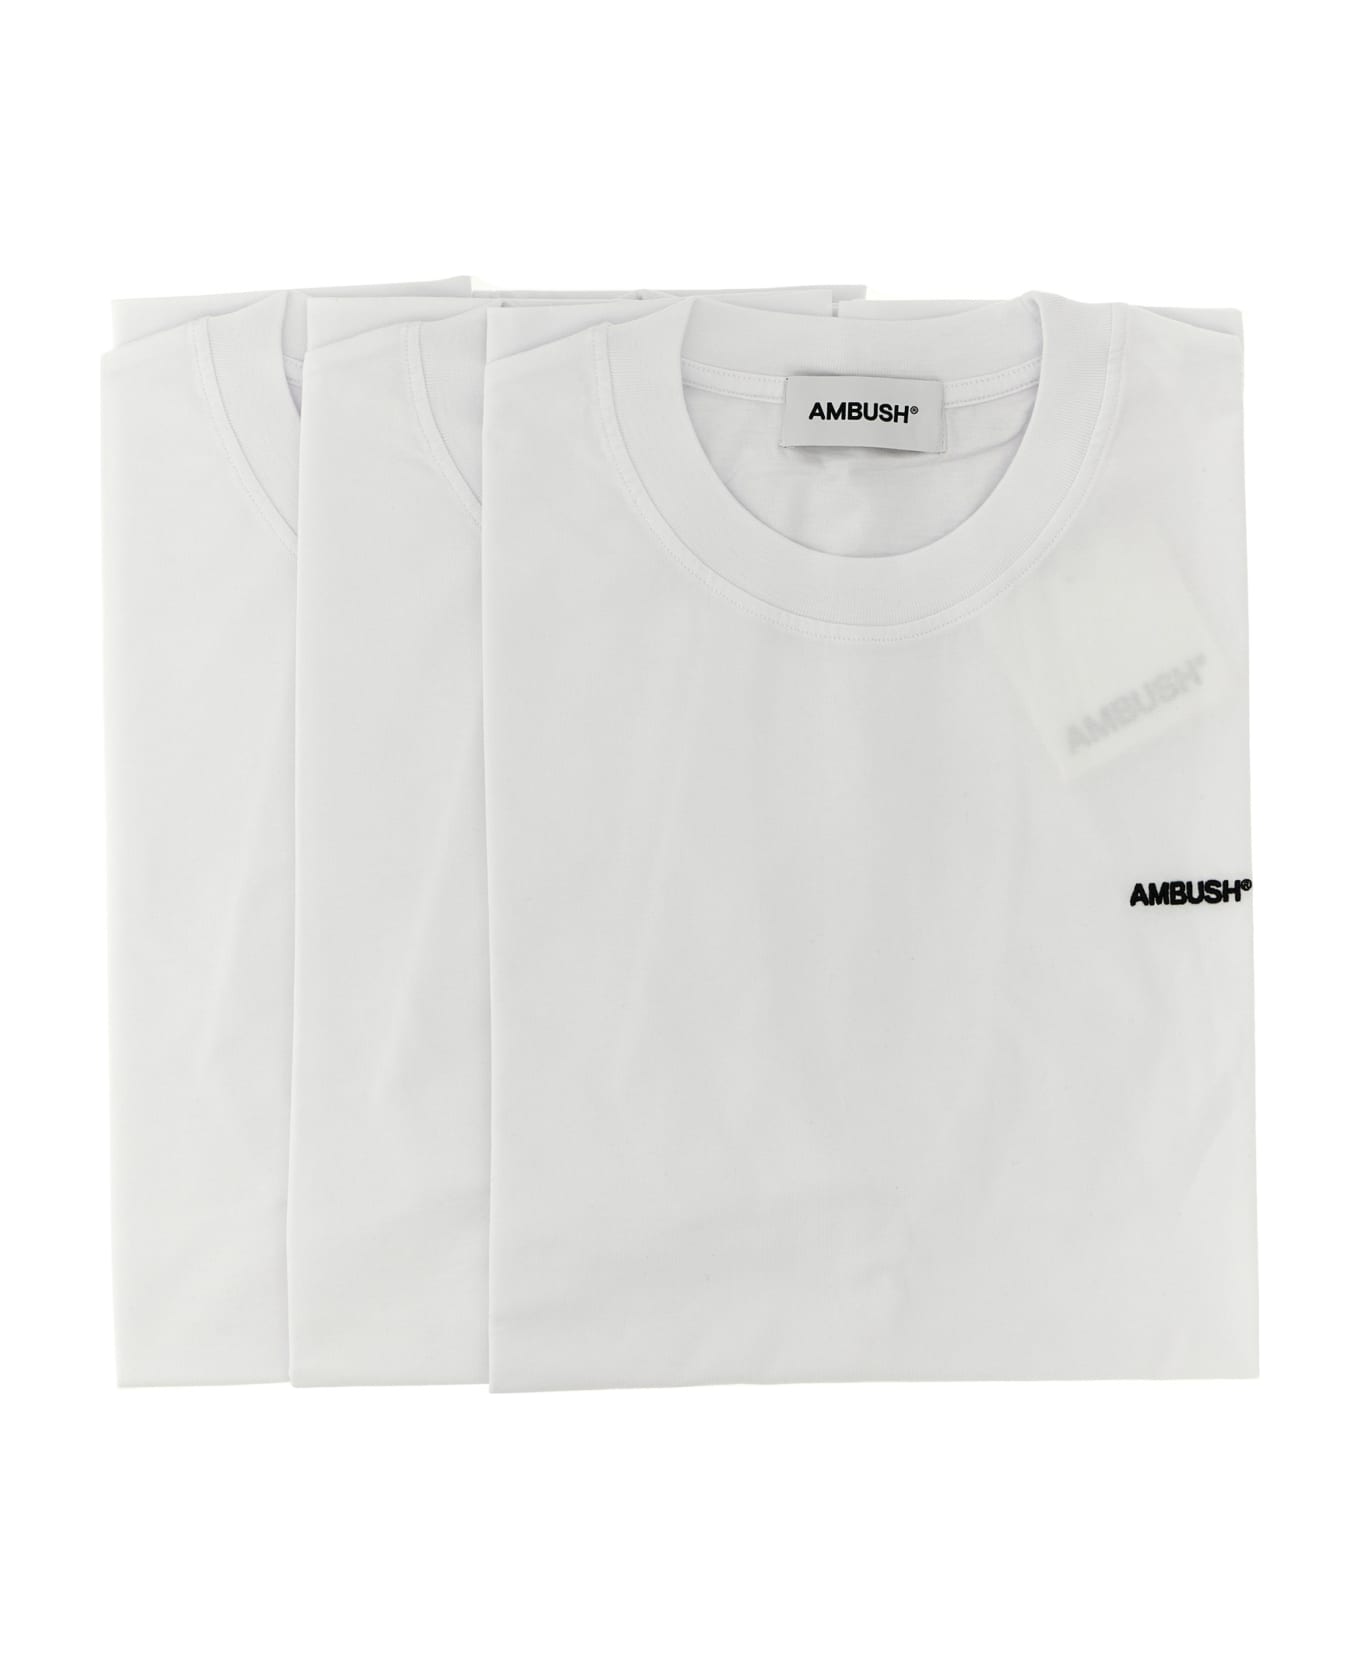 AMBUSH 3 Pack T-shirt - BLANC DE BLANC シャツ